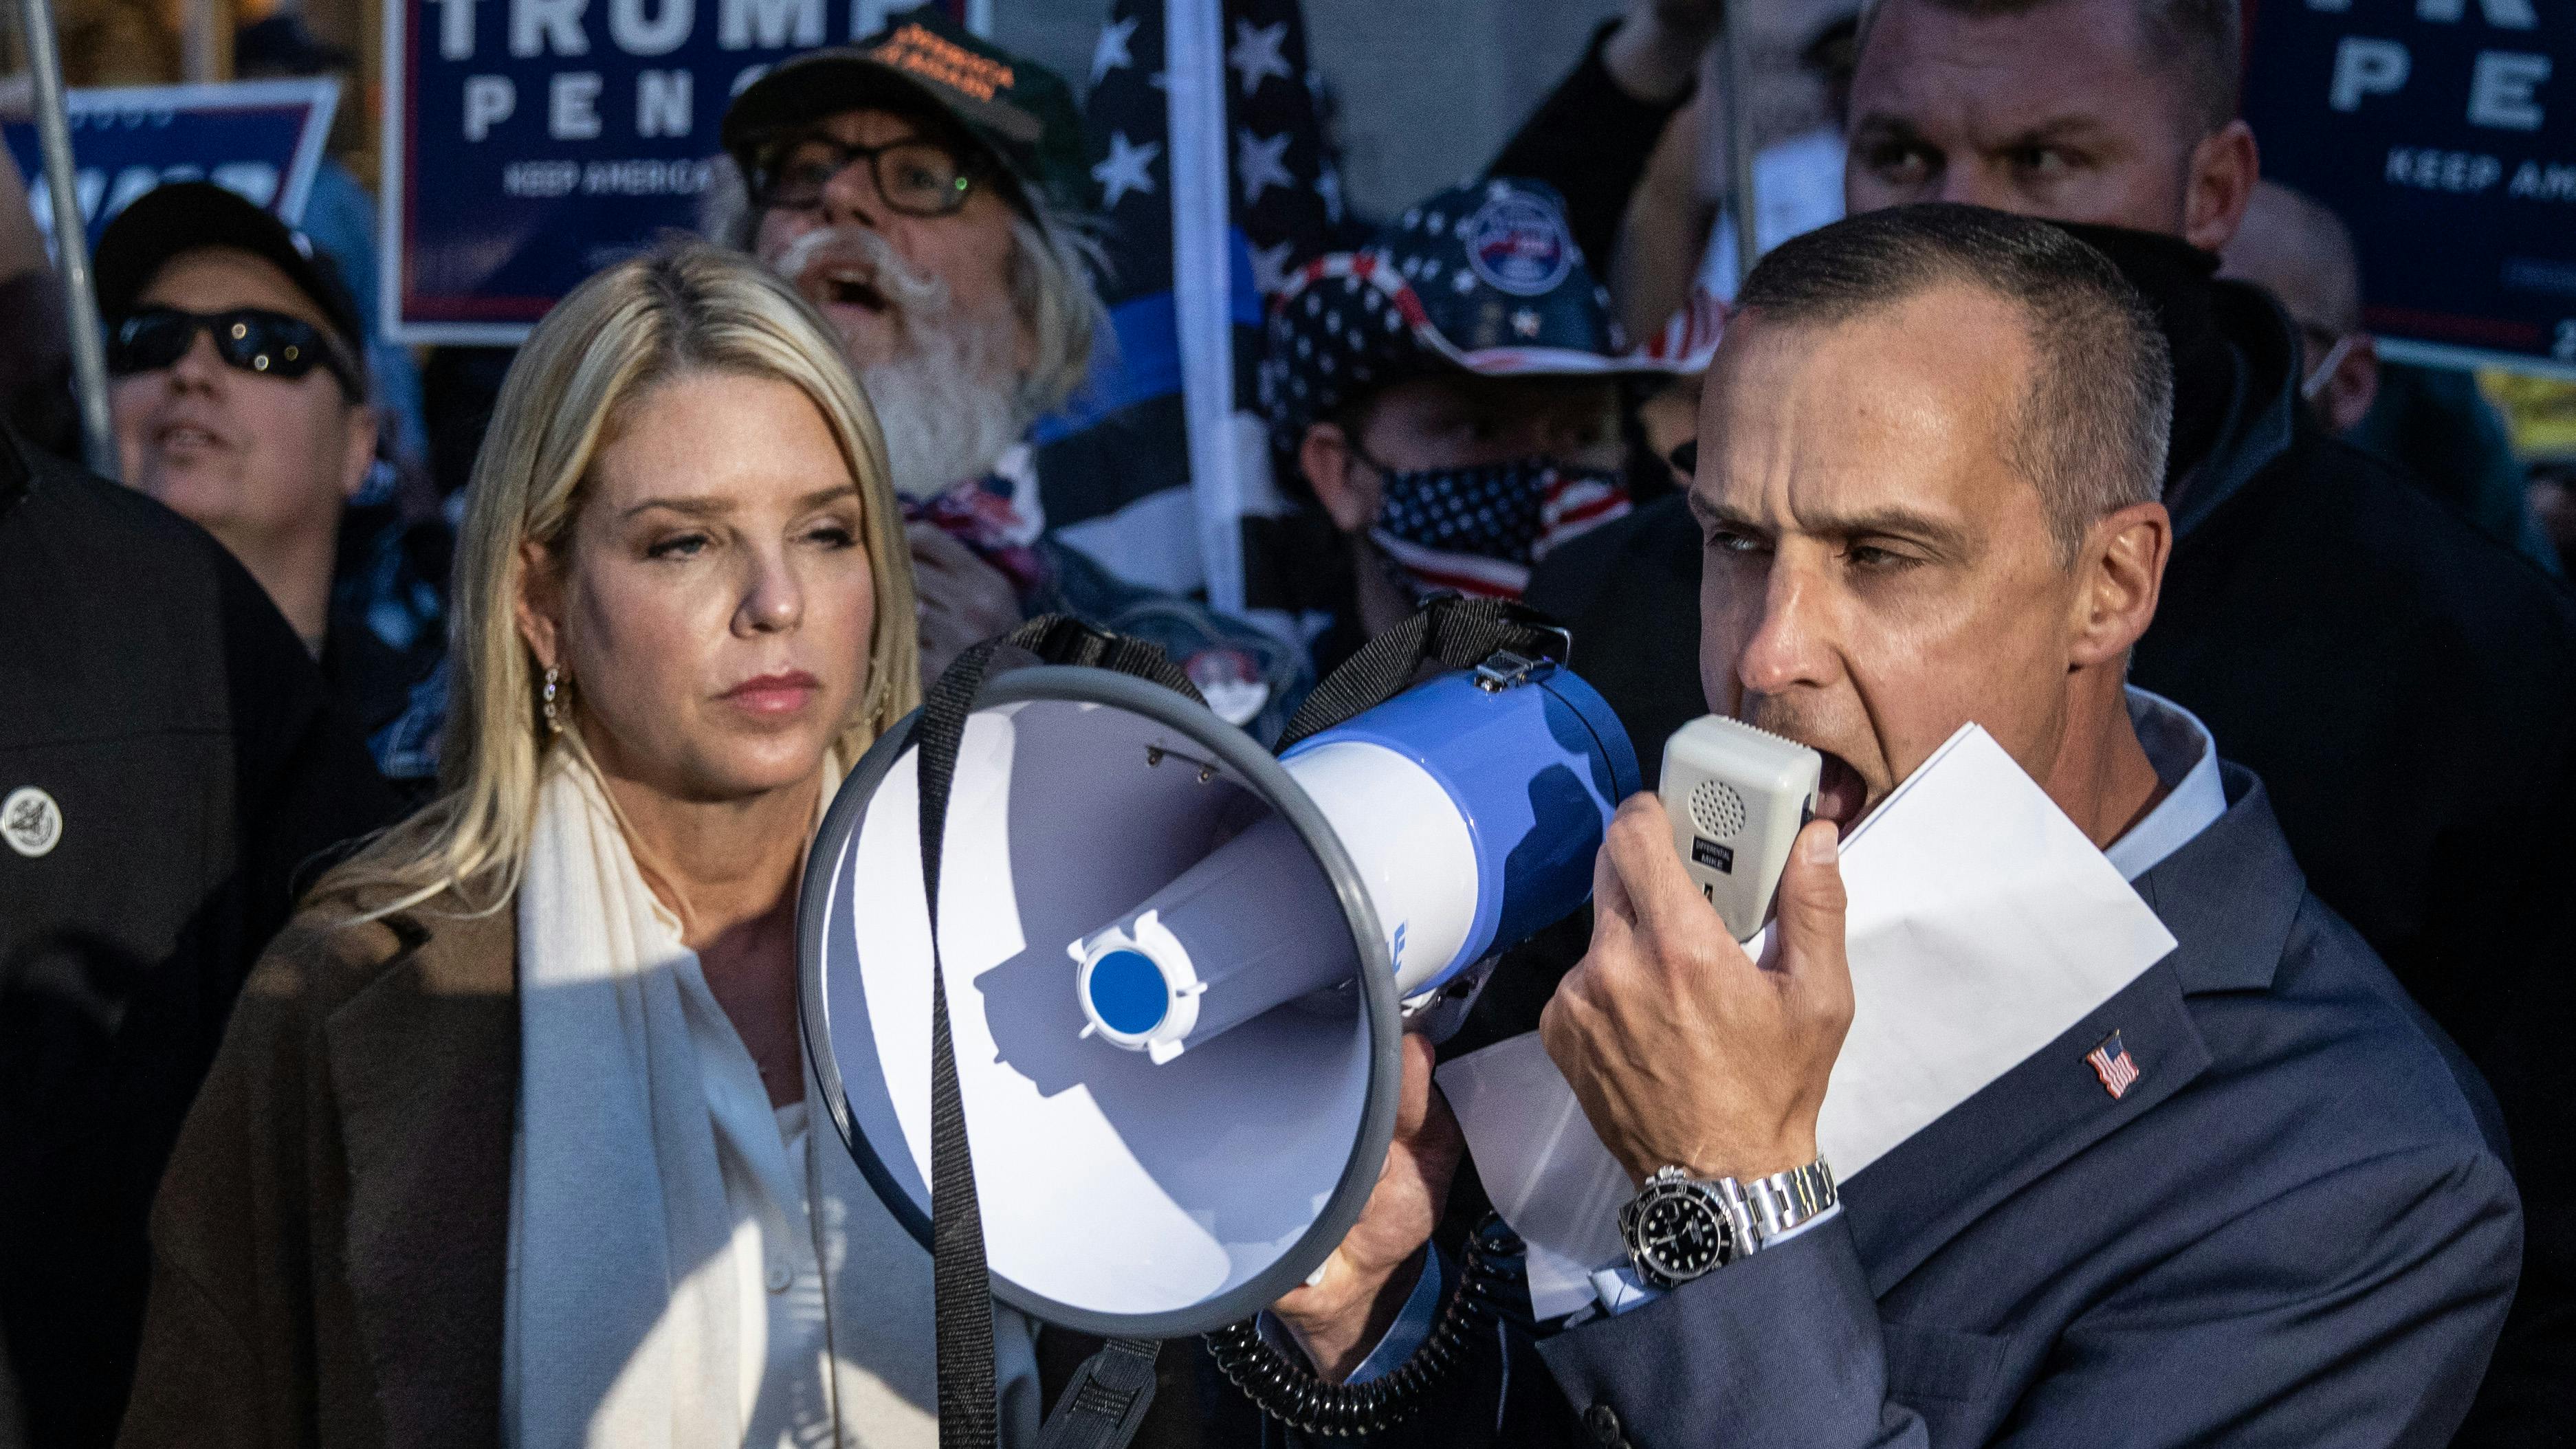 Ein Mann sprcht in ein Megaphon mit erzürntem Gesichtsausdruck. Neben ihm steht eine Frau welche entmutig und erschöpft scheint. Im Hintergrund sehen wir Pro-Trump Wahlposter welchen von AnhängerInnen gehalten werden.